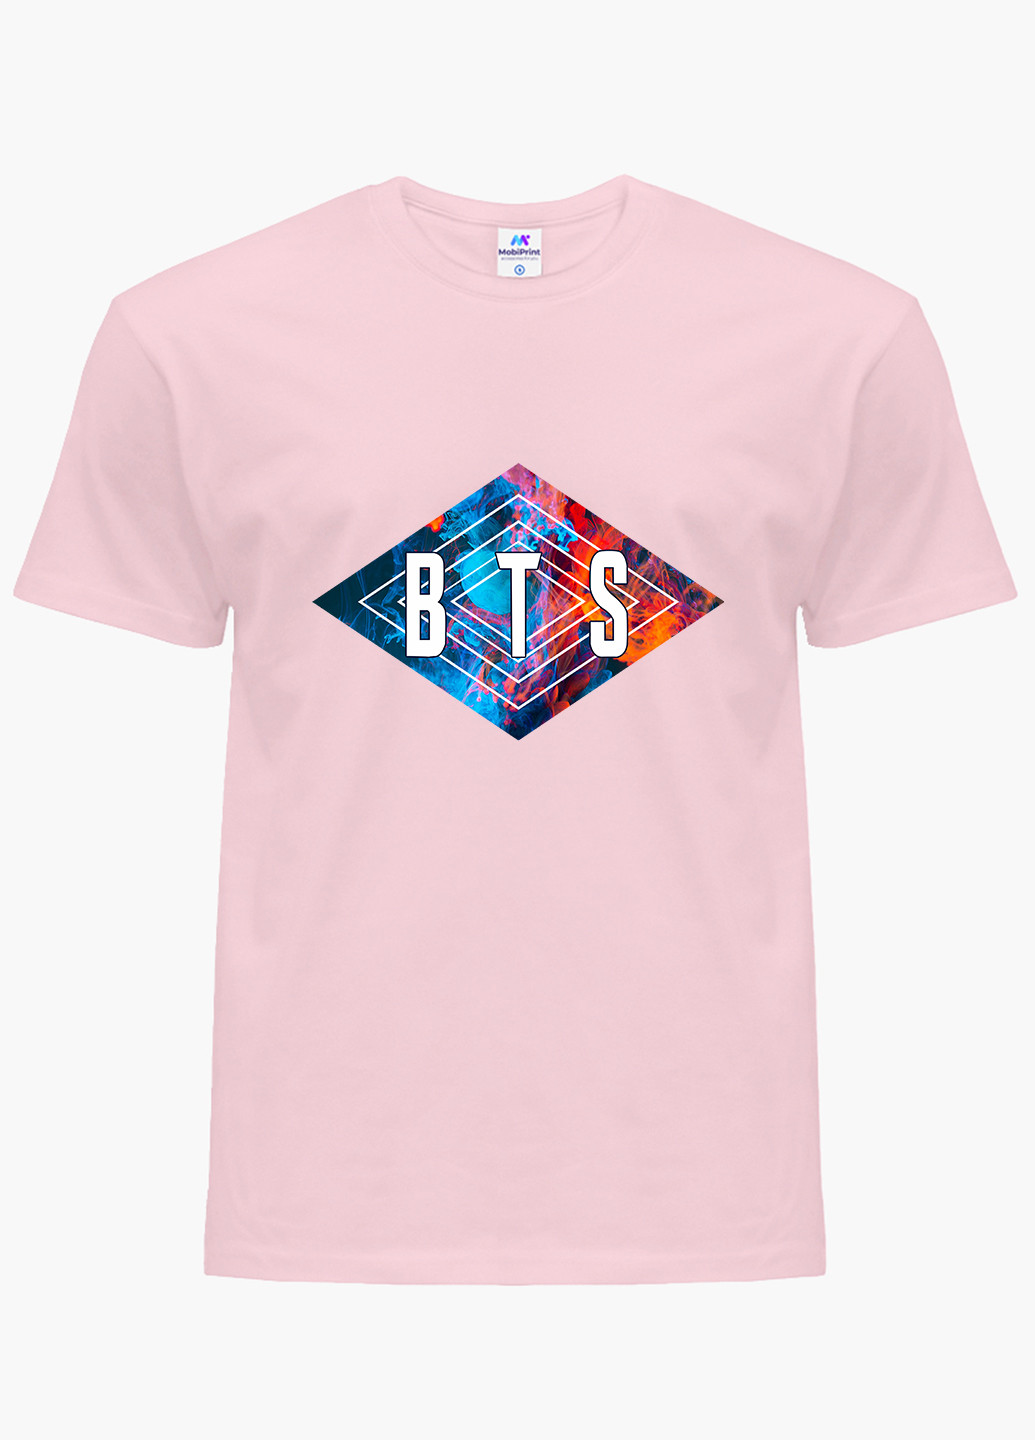 Розовая демисезонная футболка детская бтс (bts)(9224-1062) MobiPrint